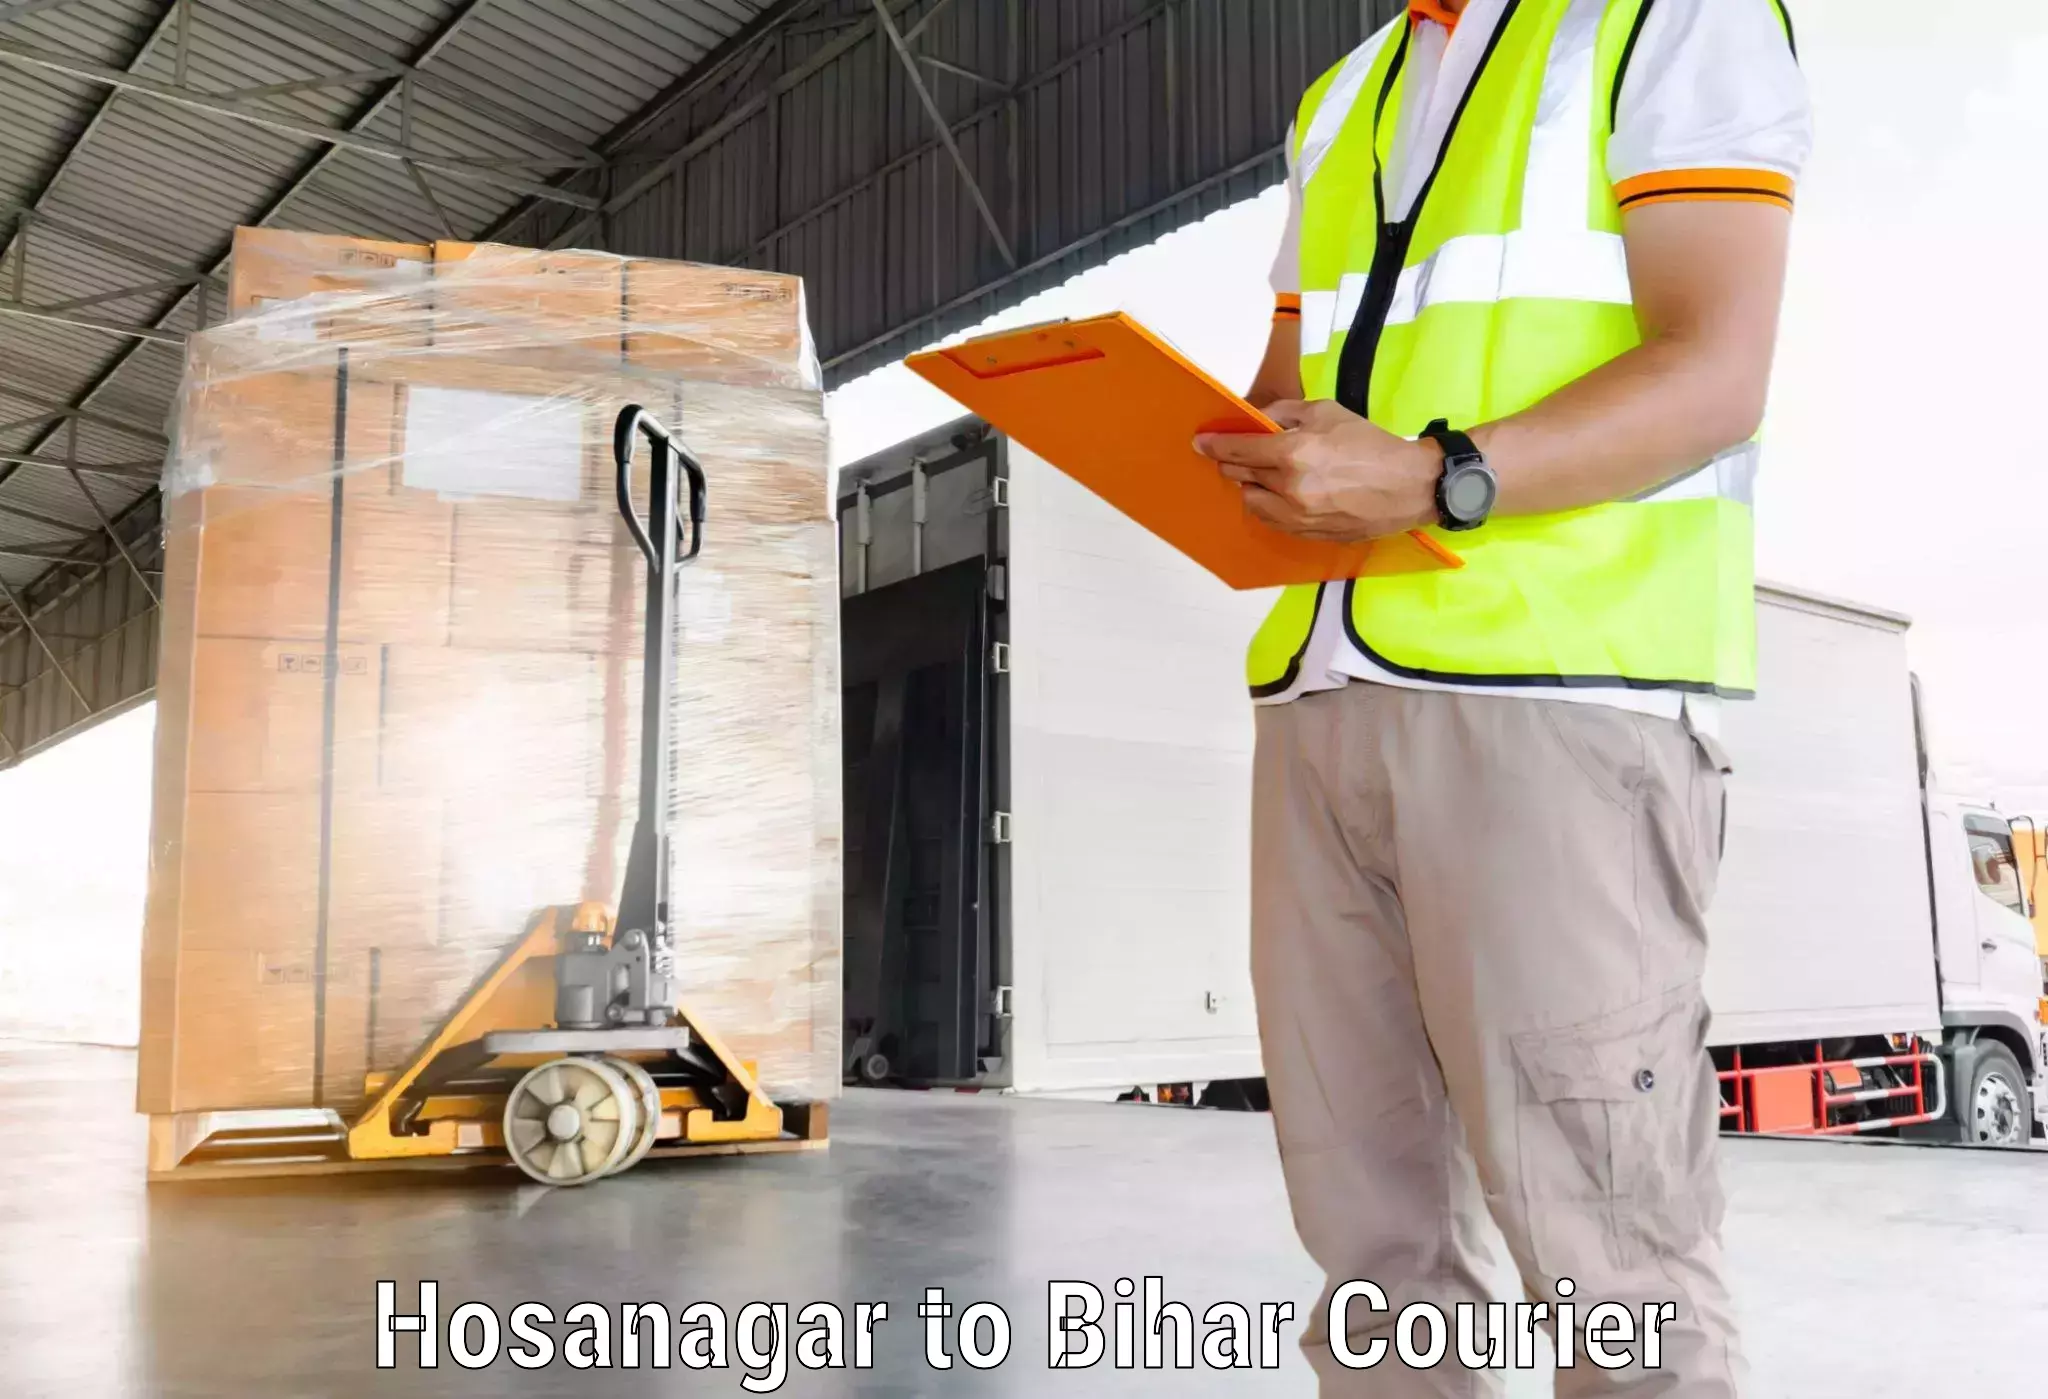 Customer-centric shipping Hosanagar to Khagaria